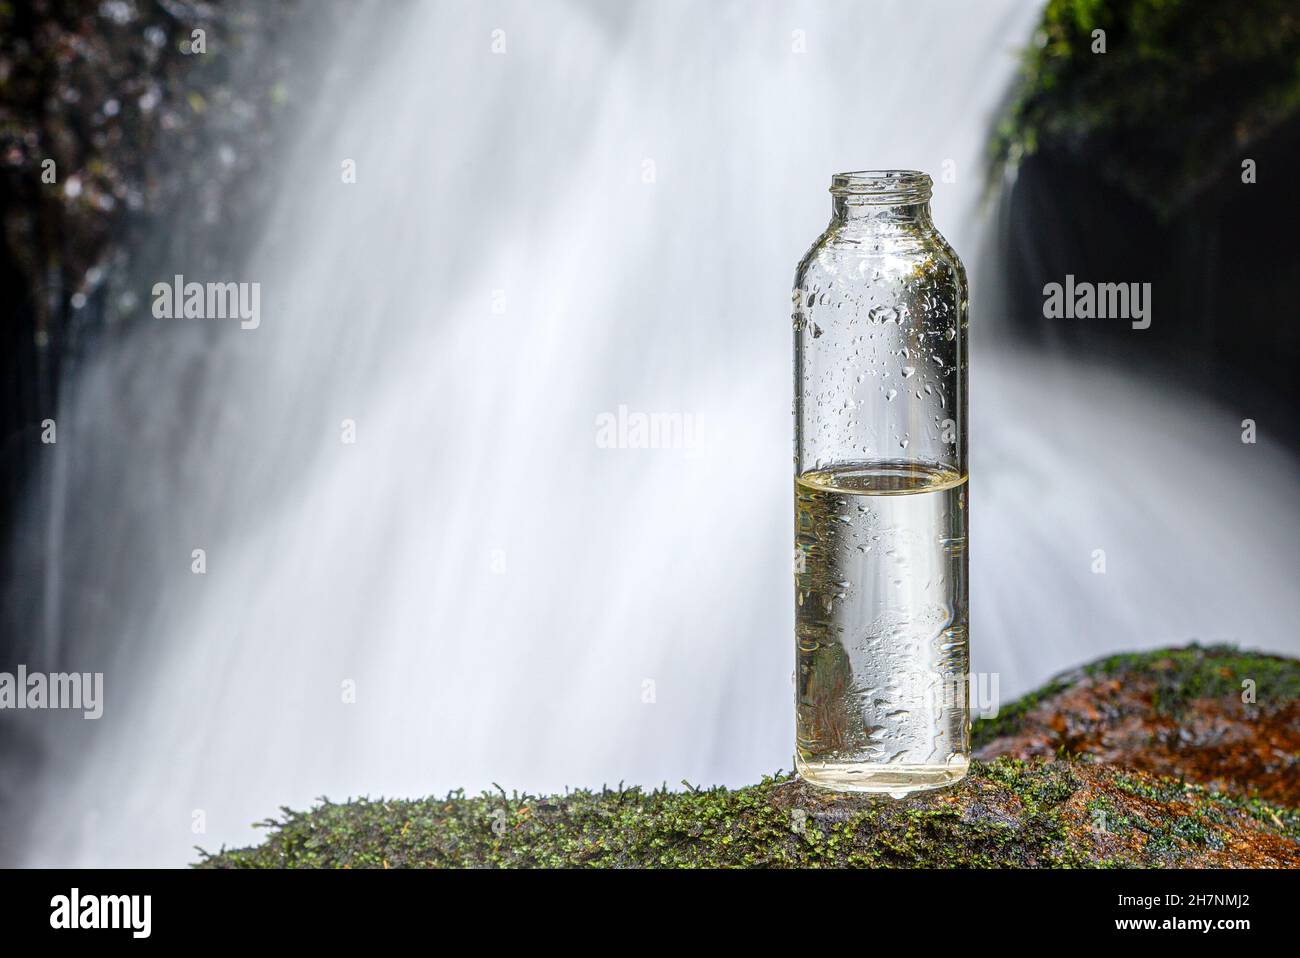 Eine halbvolle Flasche Trinkwasser steht auf einem Stein vor einem Wasserfall. Wird uns bald das Wasser ausgehen? Stockfoto